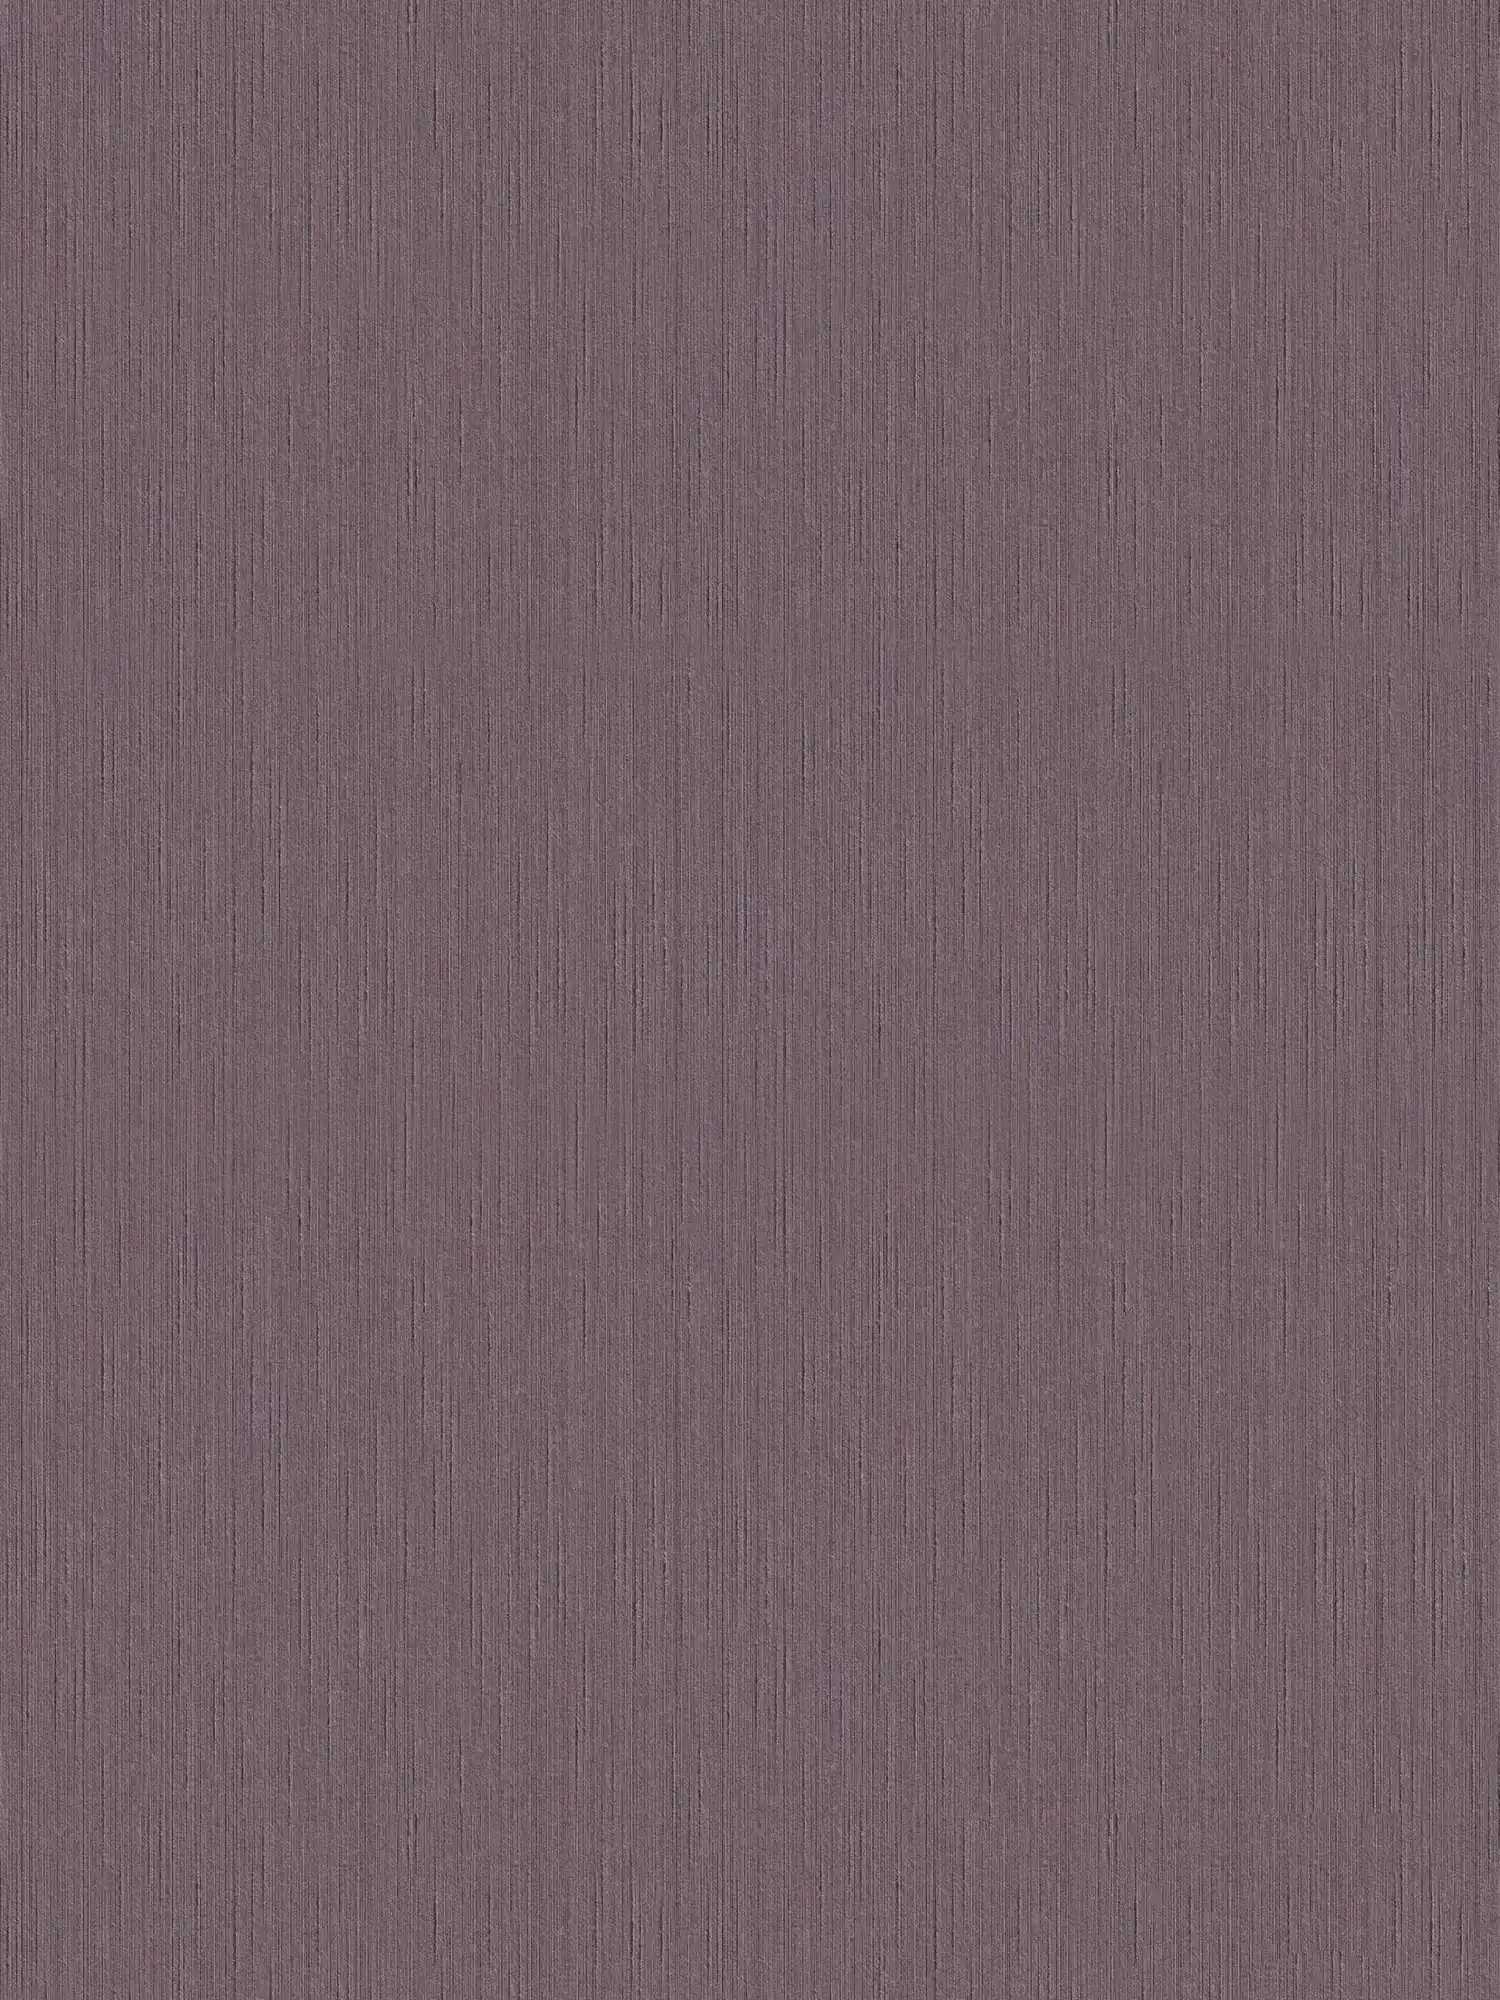 Carta da parati color malva scuro con struttura naturale - viola, porpora
